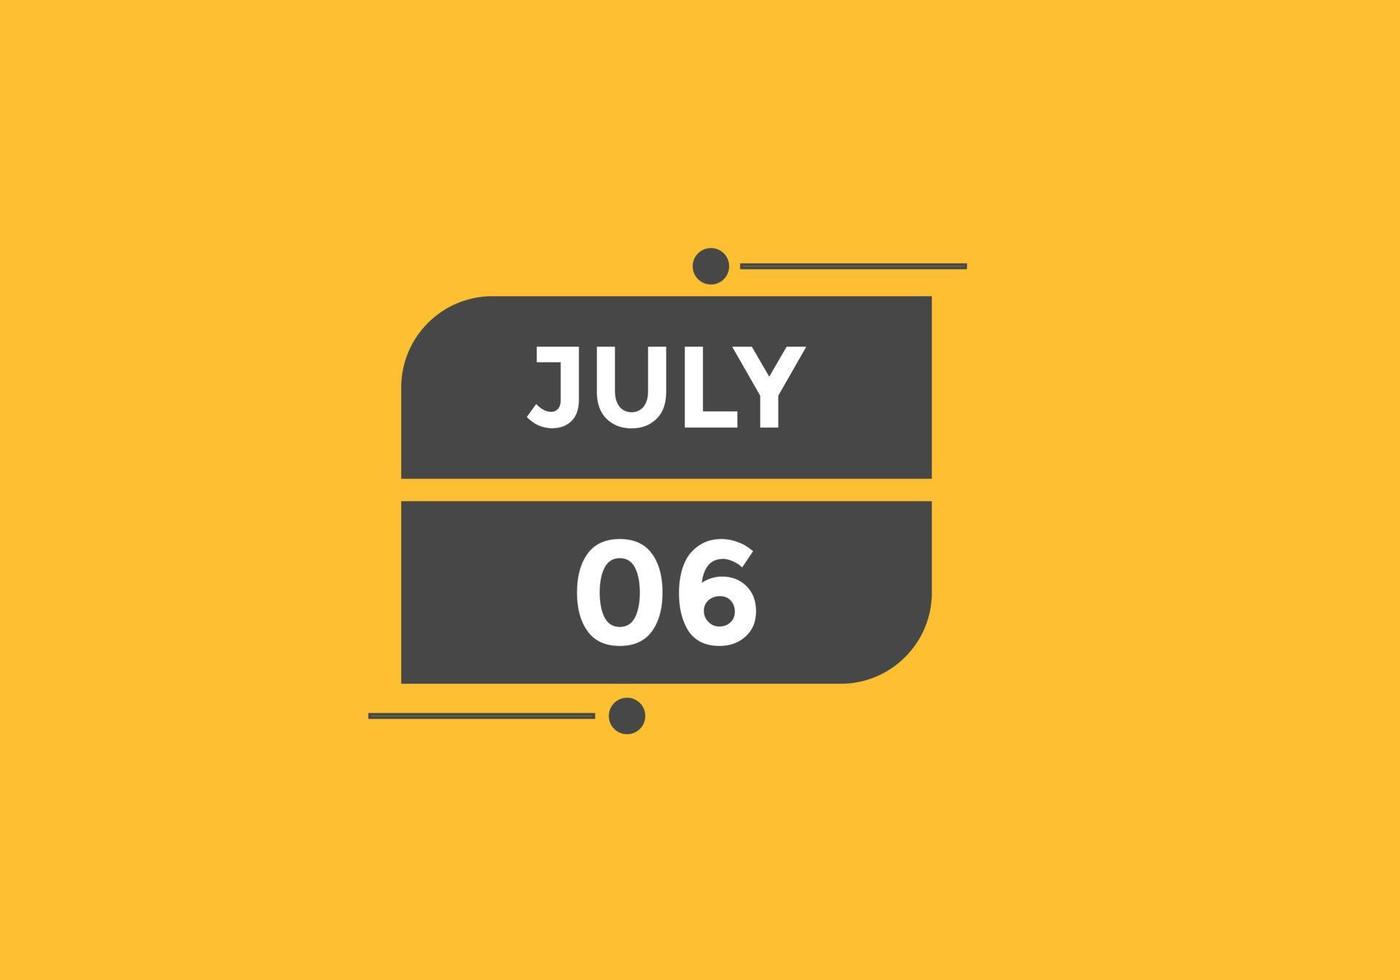 luglio 6 calendario promemoria. 6 ° luglio quotidiano calendario icona modello. calendario 6 ° luglio icona design modello. vettore illustrazione